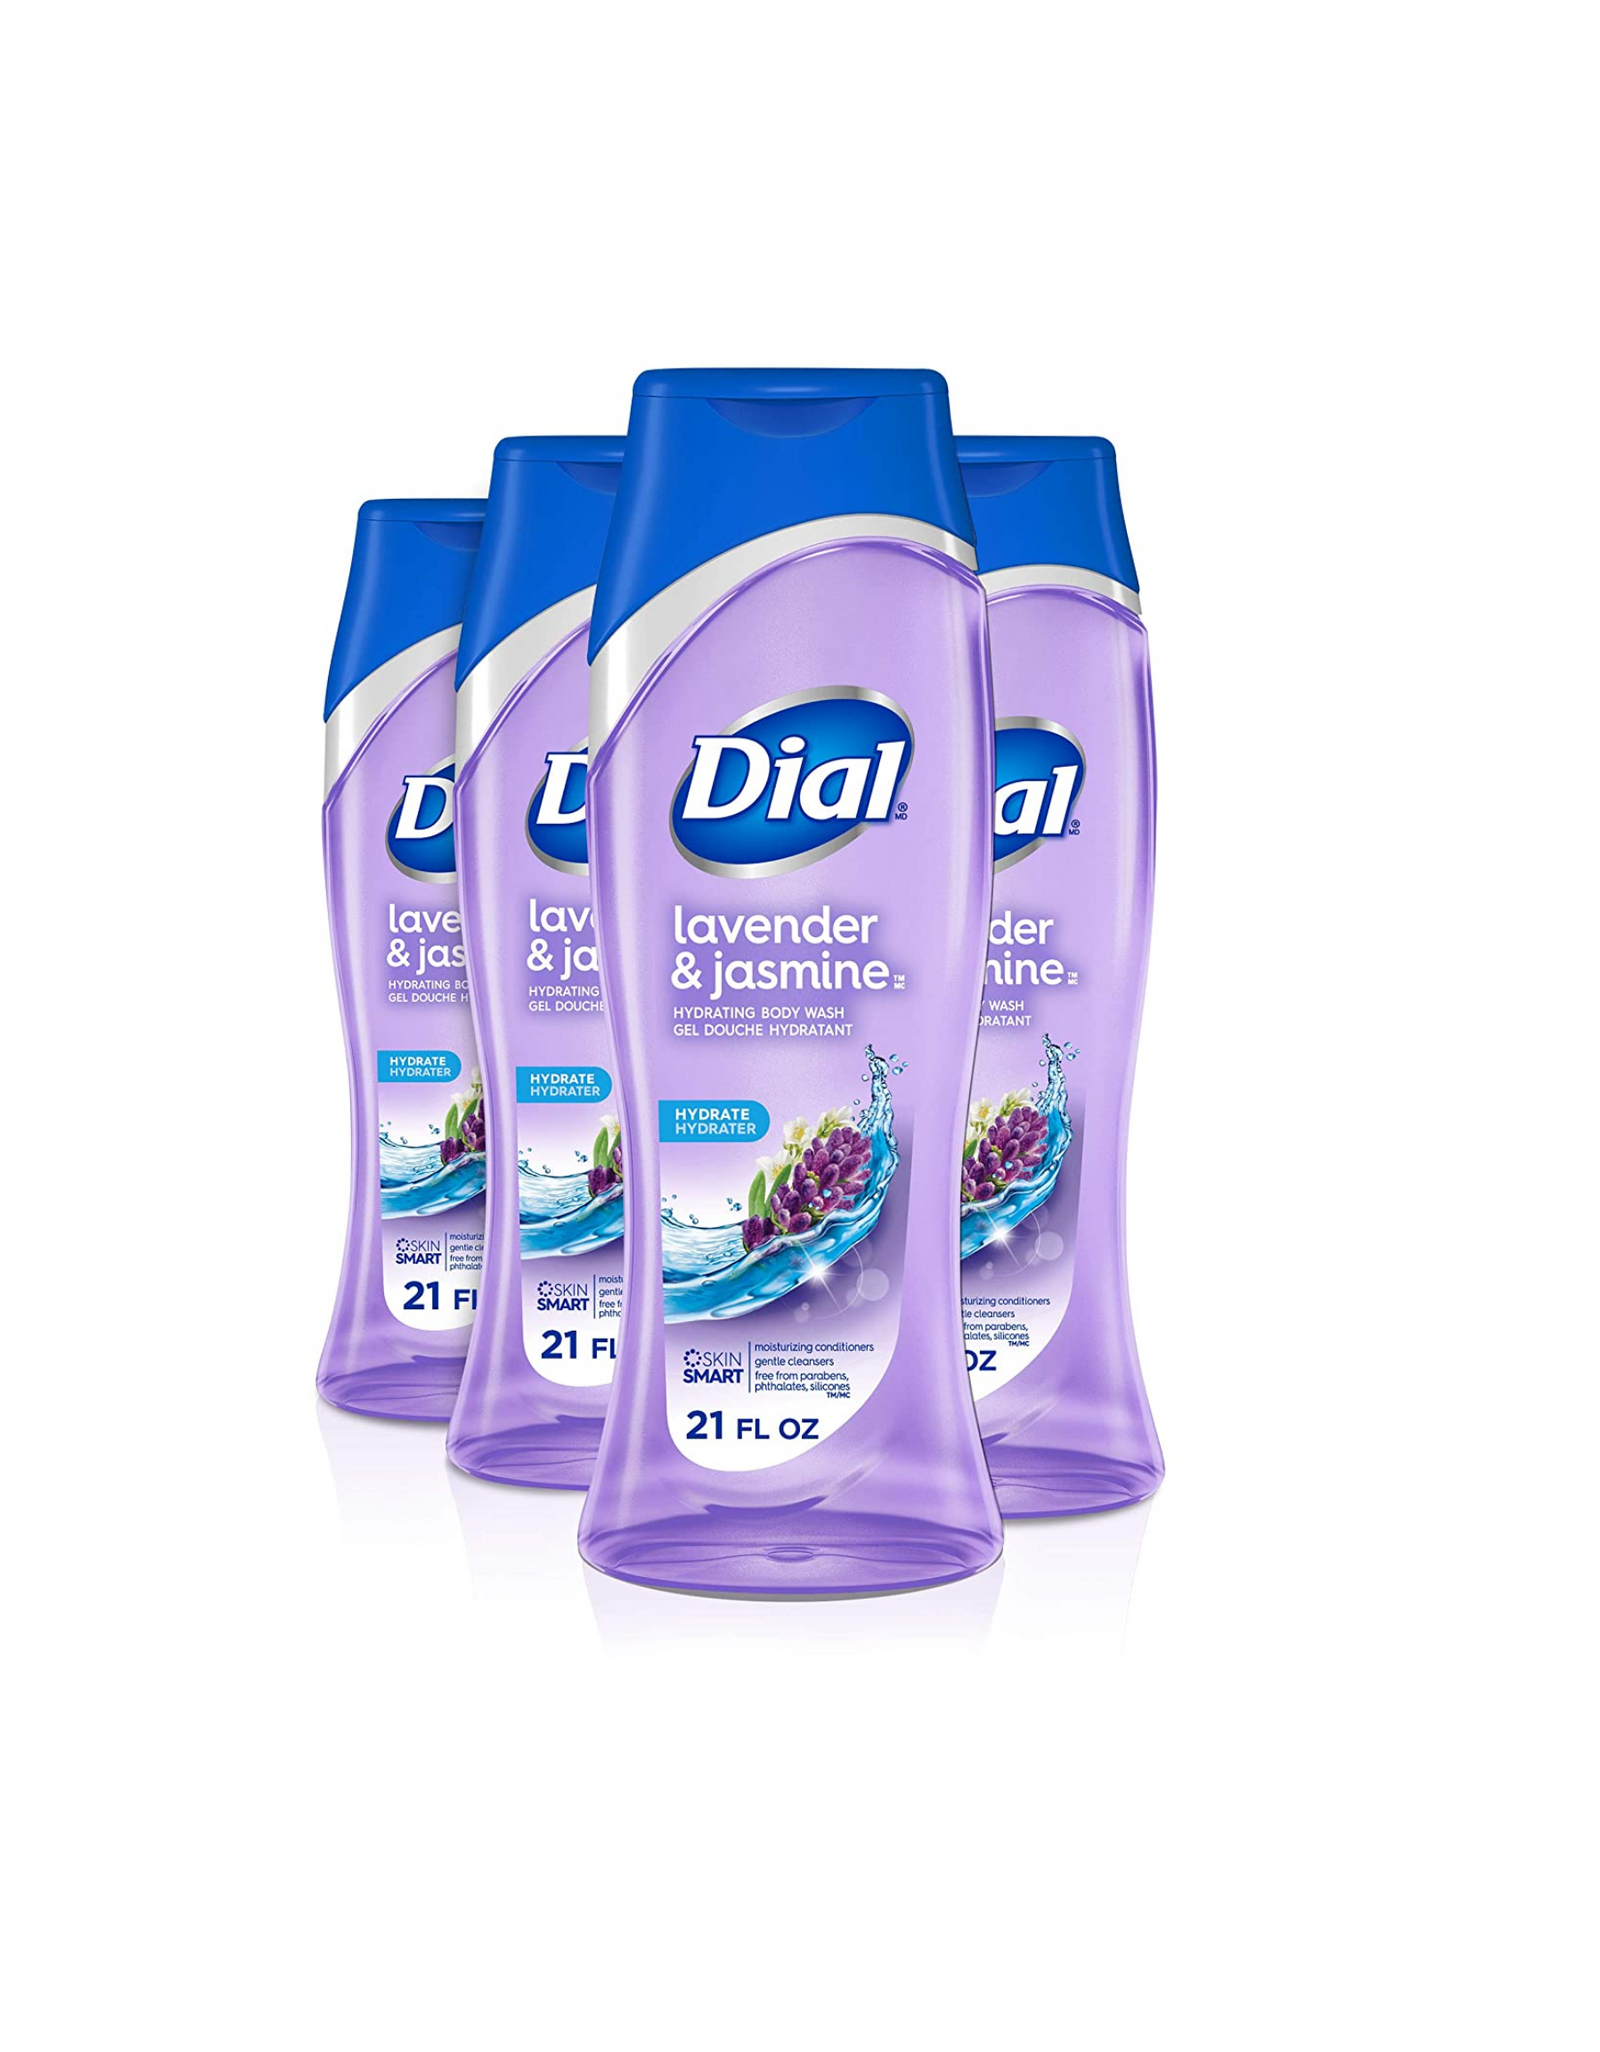 Dial Body Wash, Lavender & Jasmine, Hydrating Body Wash Gel Douch Hydrant, 21 fl oz (Pack of 4)